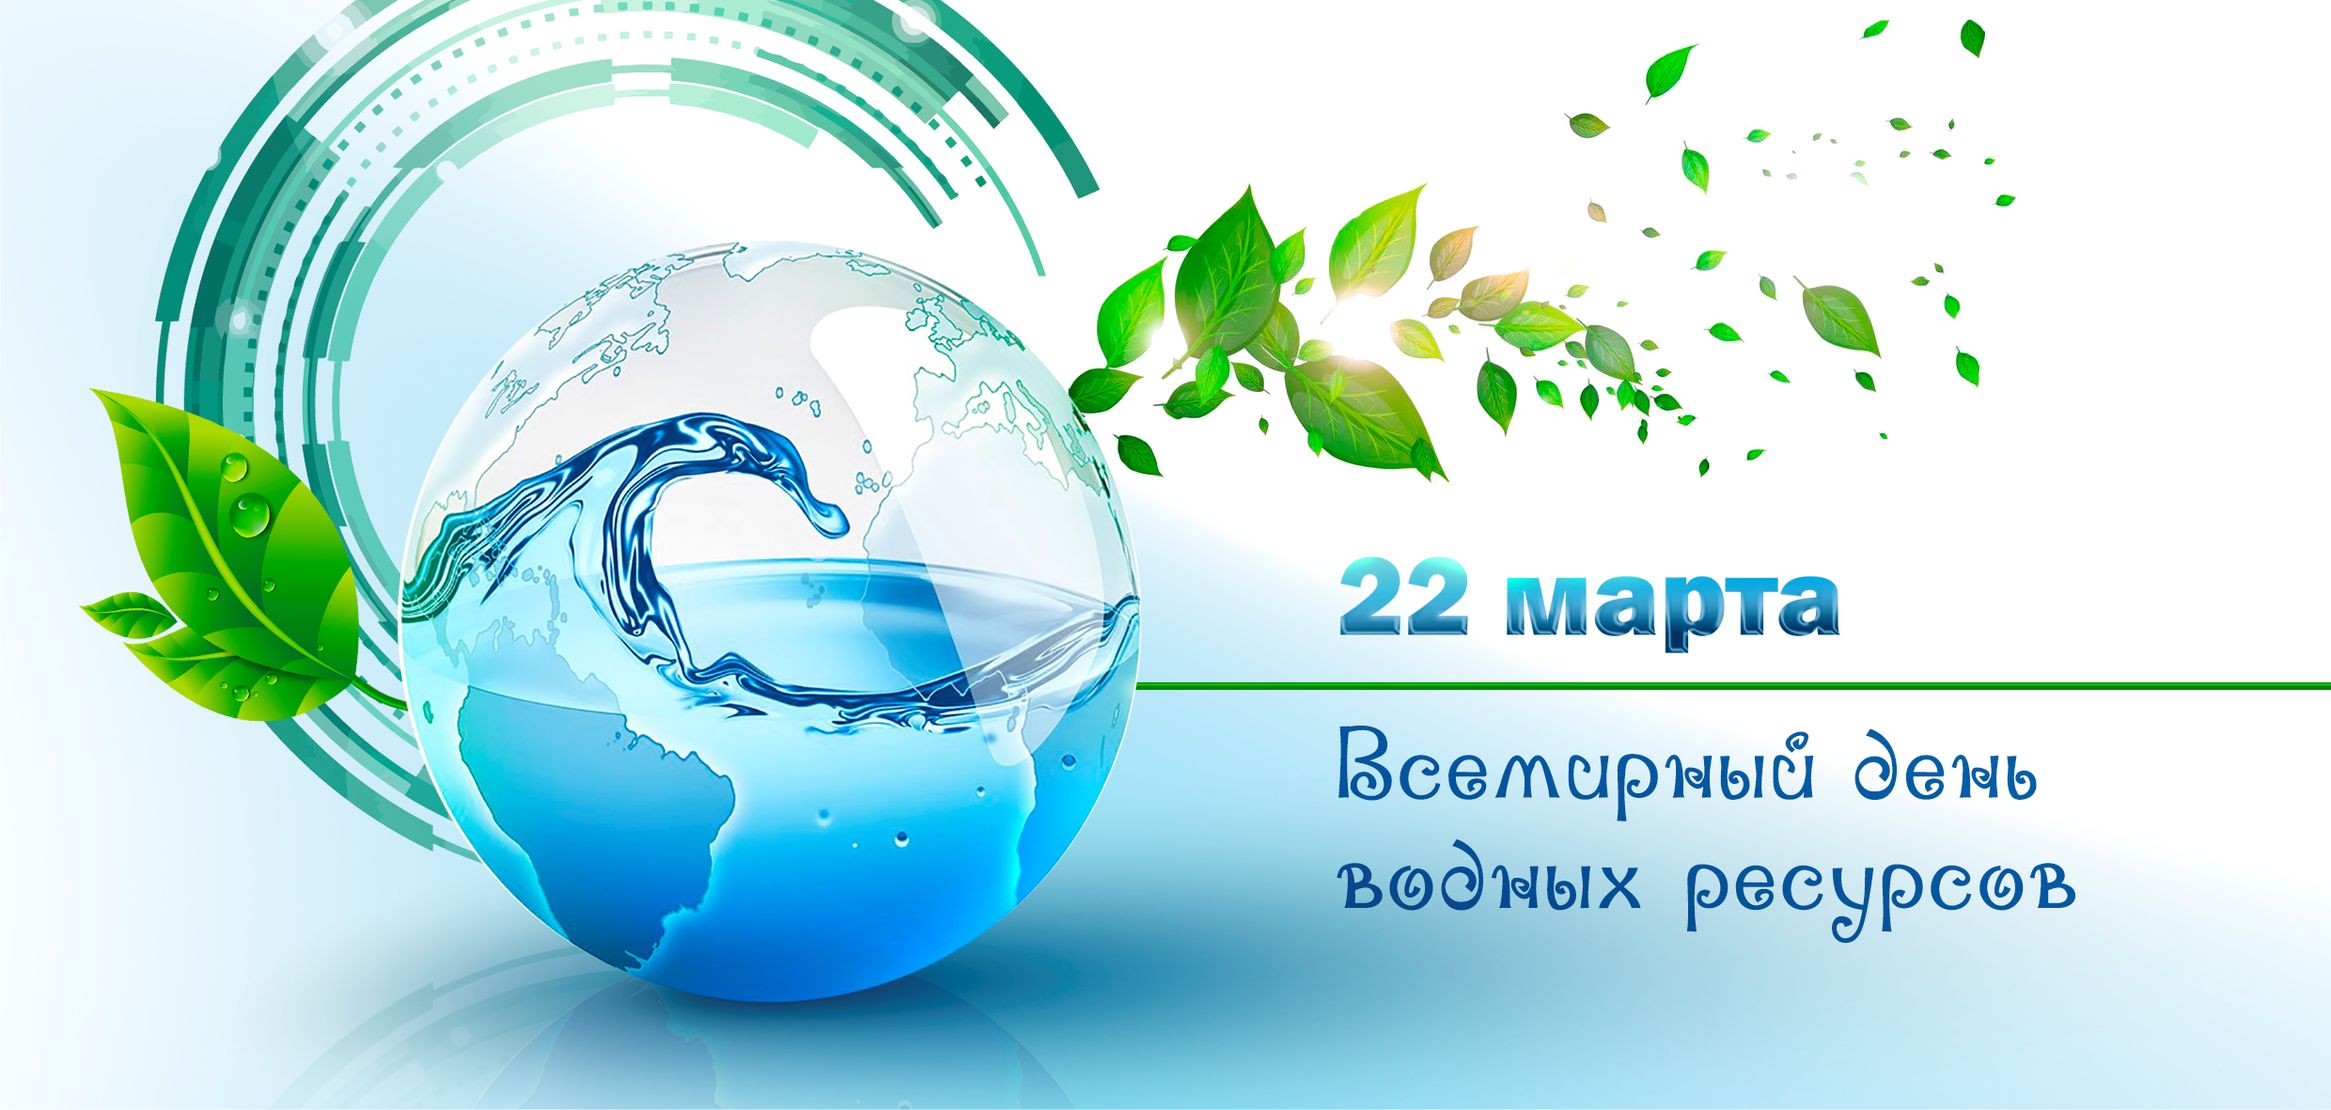 Всемирный день водных ресурсов 22 марта рисунок